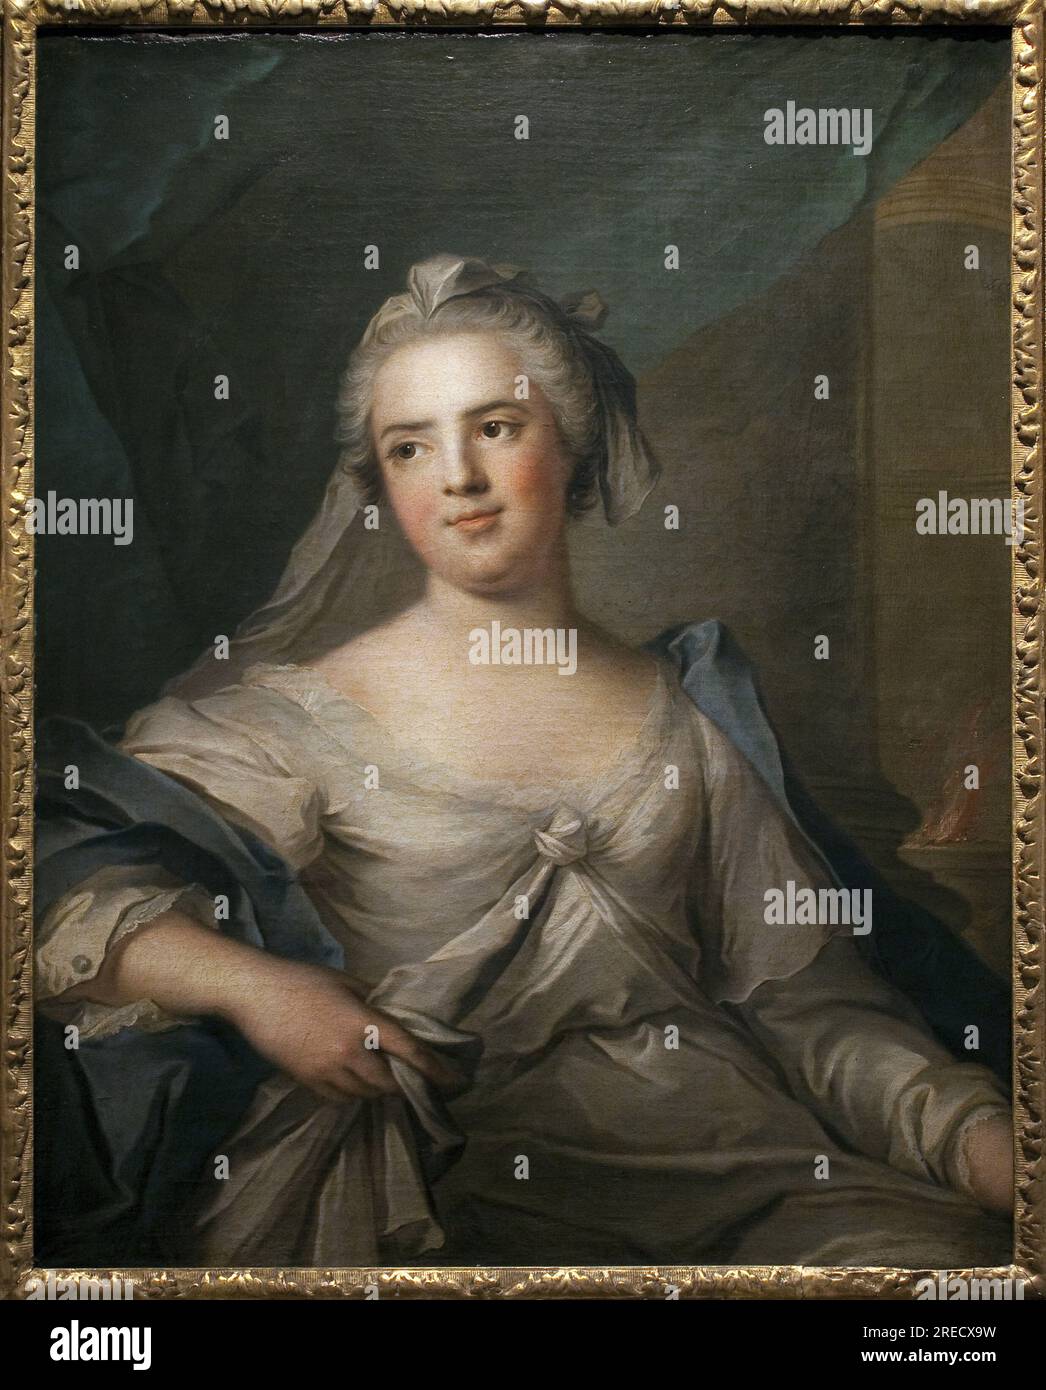 Madame Infante en vestale - Peinture de Jean Marc (Jean-Marc) Nattier (1685-1766), huile sur toile, art francais 18e siecle - Musee des Beaux Arts de Pau Stock Photo